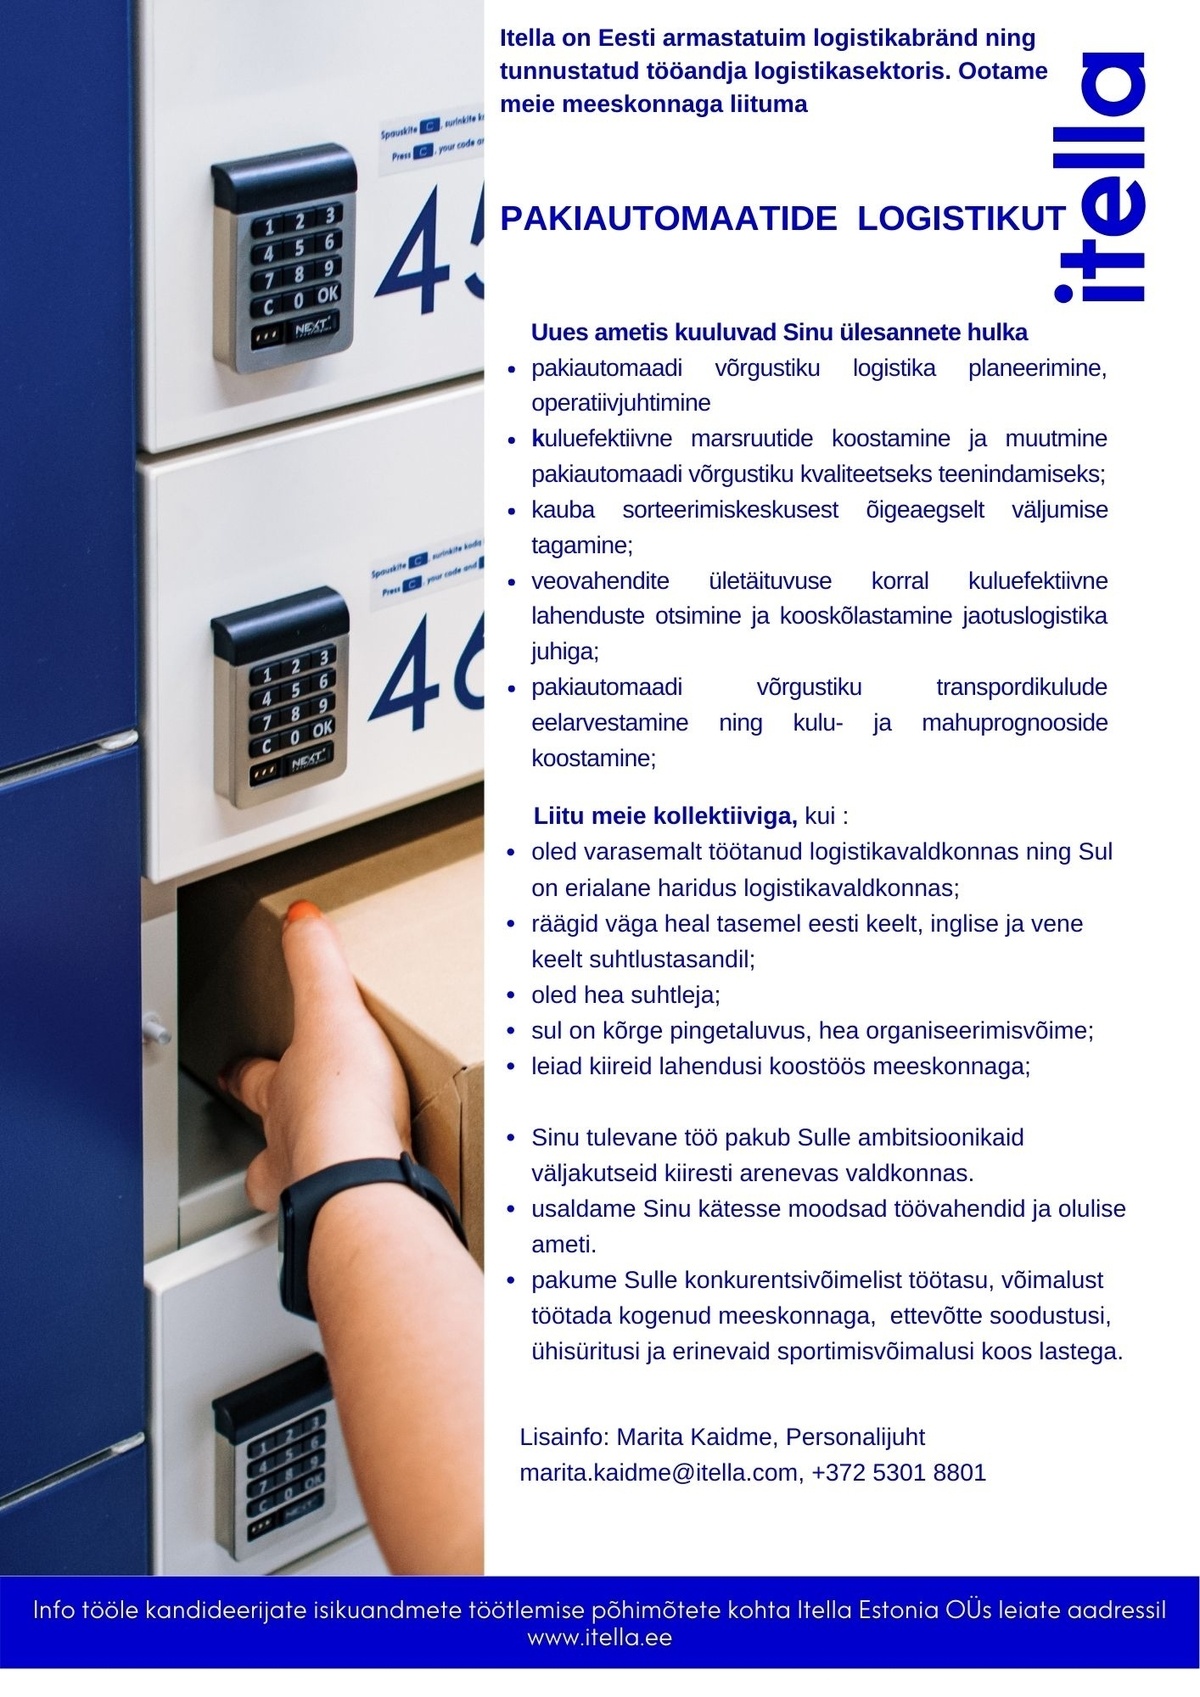 Itella Estonia OÜ Pakiautomaatide logistik